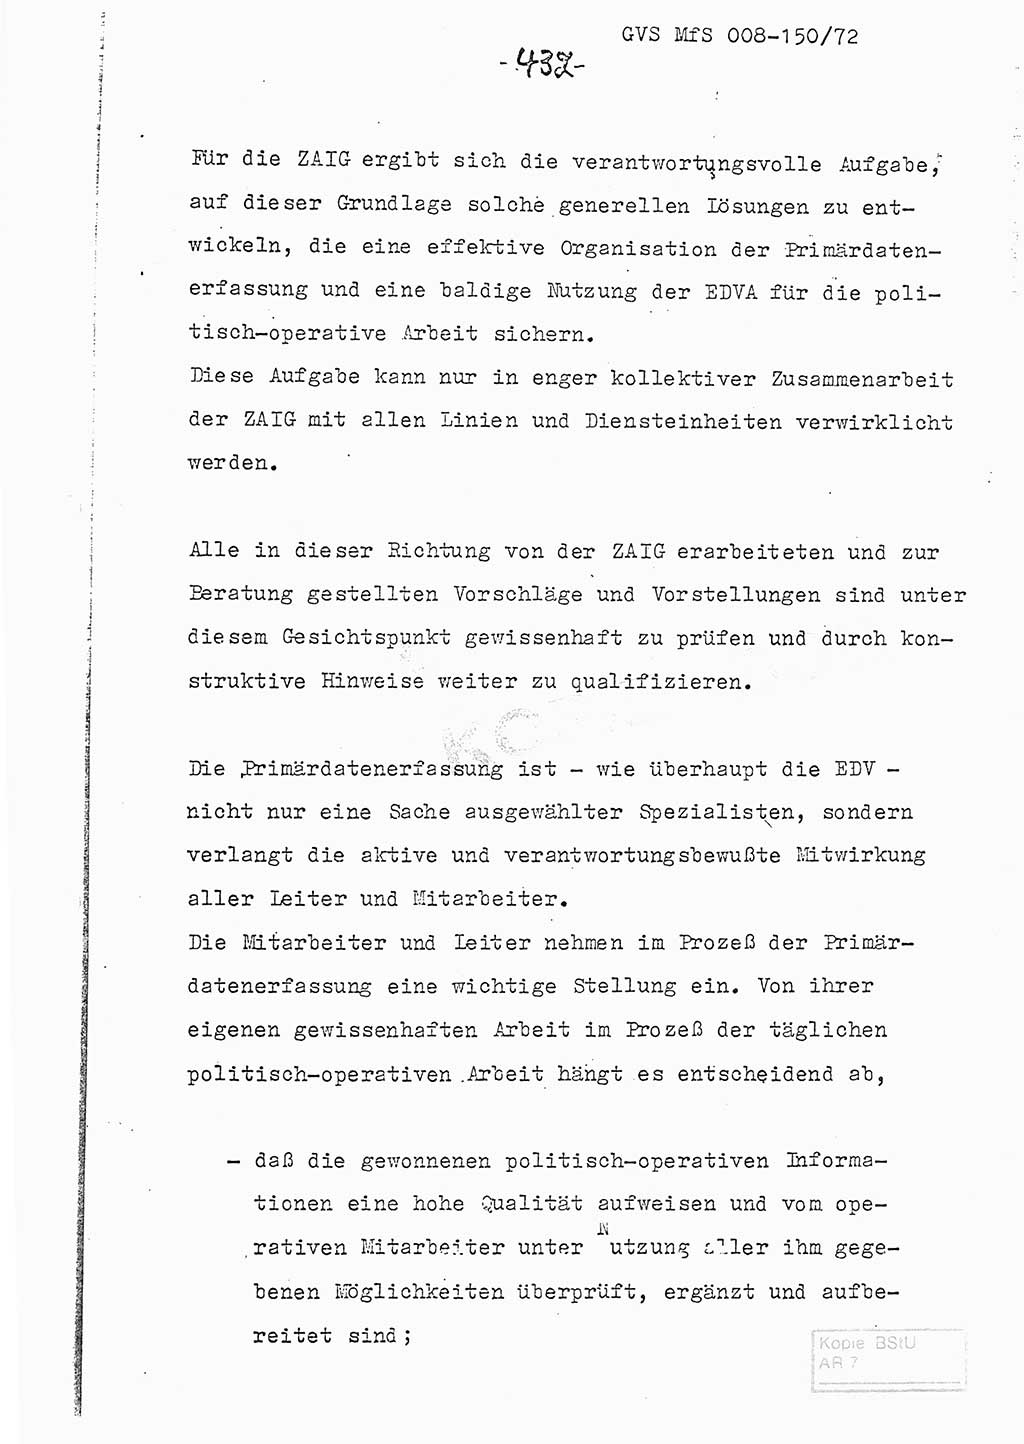 Referat (Entwurf) des Genossen Minister (Generaloberst Erich Mielke) auf der Dienstkonferenz 1972, Ministerium für Staatssicherheit (MfS) [Deutsche Demokratische Republik (DDR)], Der Minister, Geheime Verschlußsache (GVS) 008-150/72, Berlin 25.2.1972, Seite 432 (Ref. Entw. DK MfS DDR Min. GVS 008-150/72 1972, S. 432)